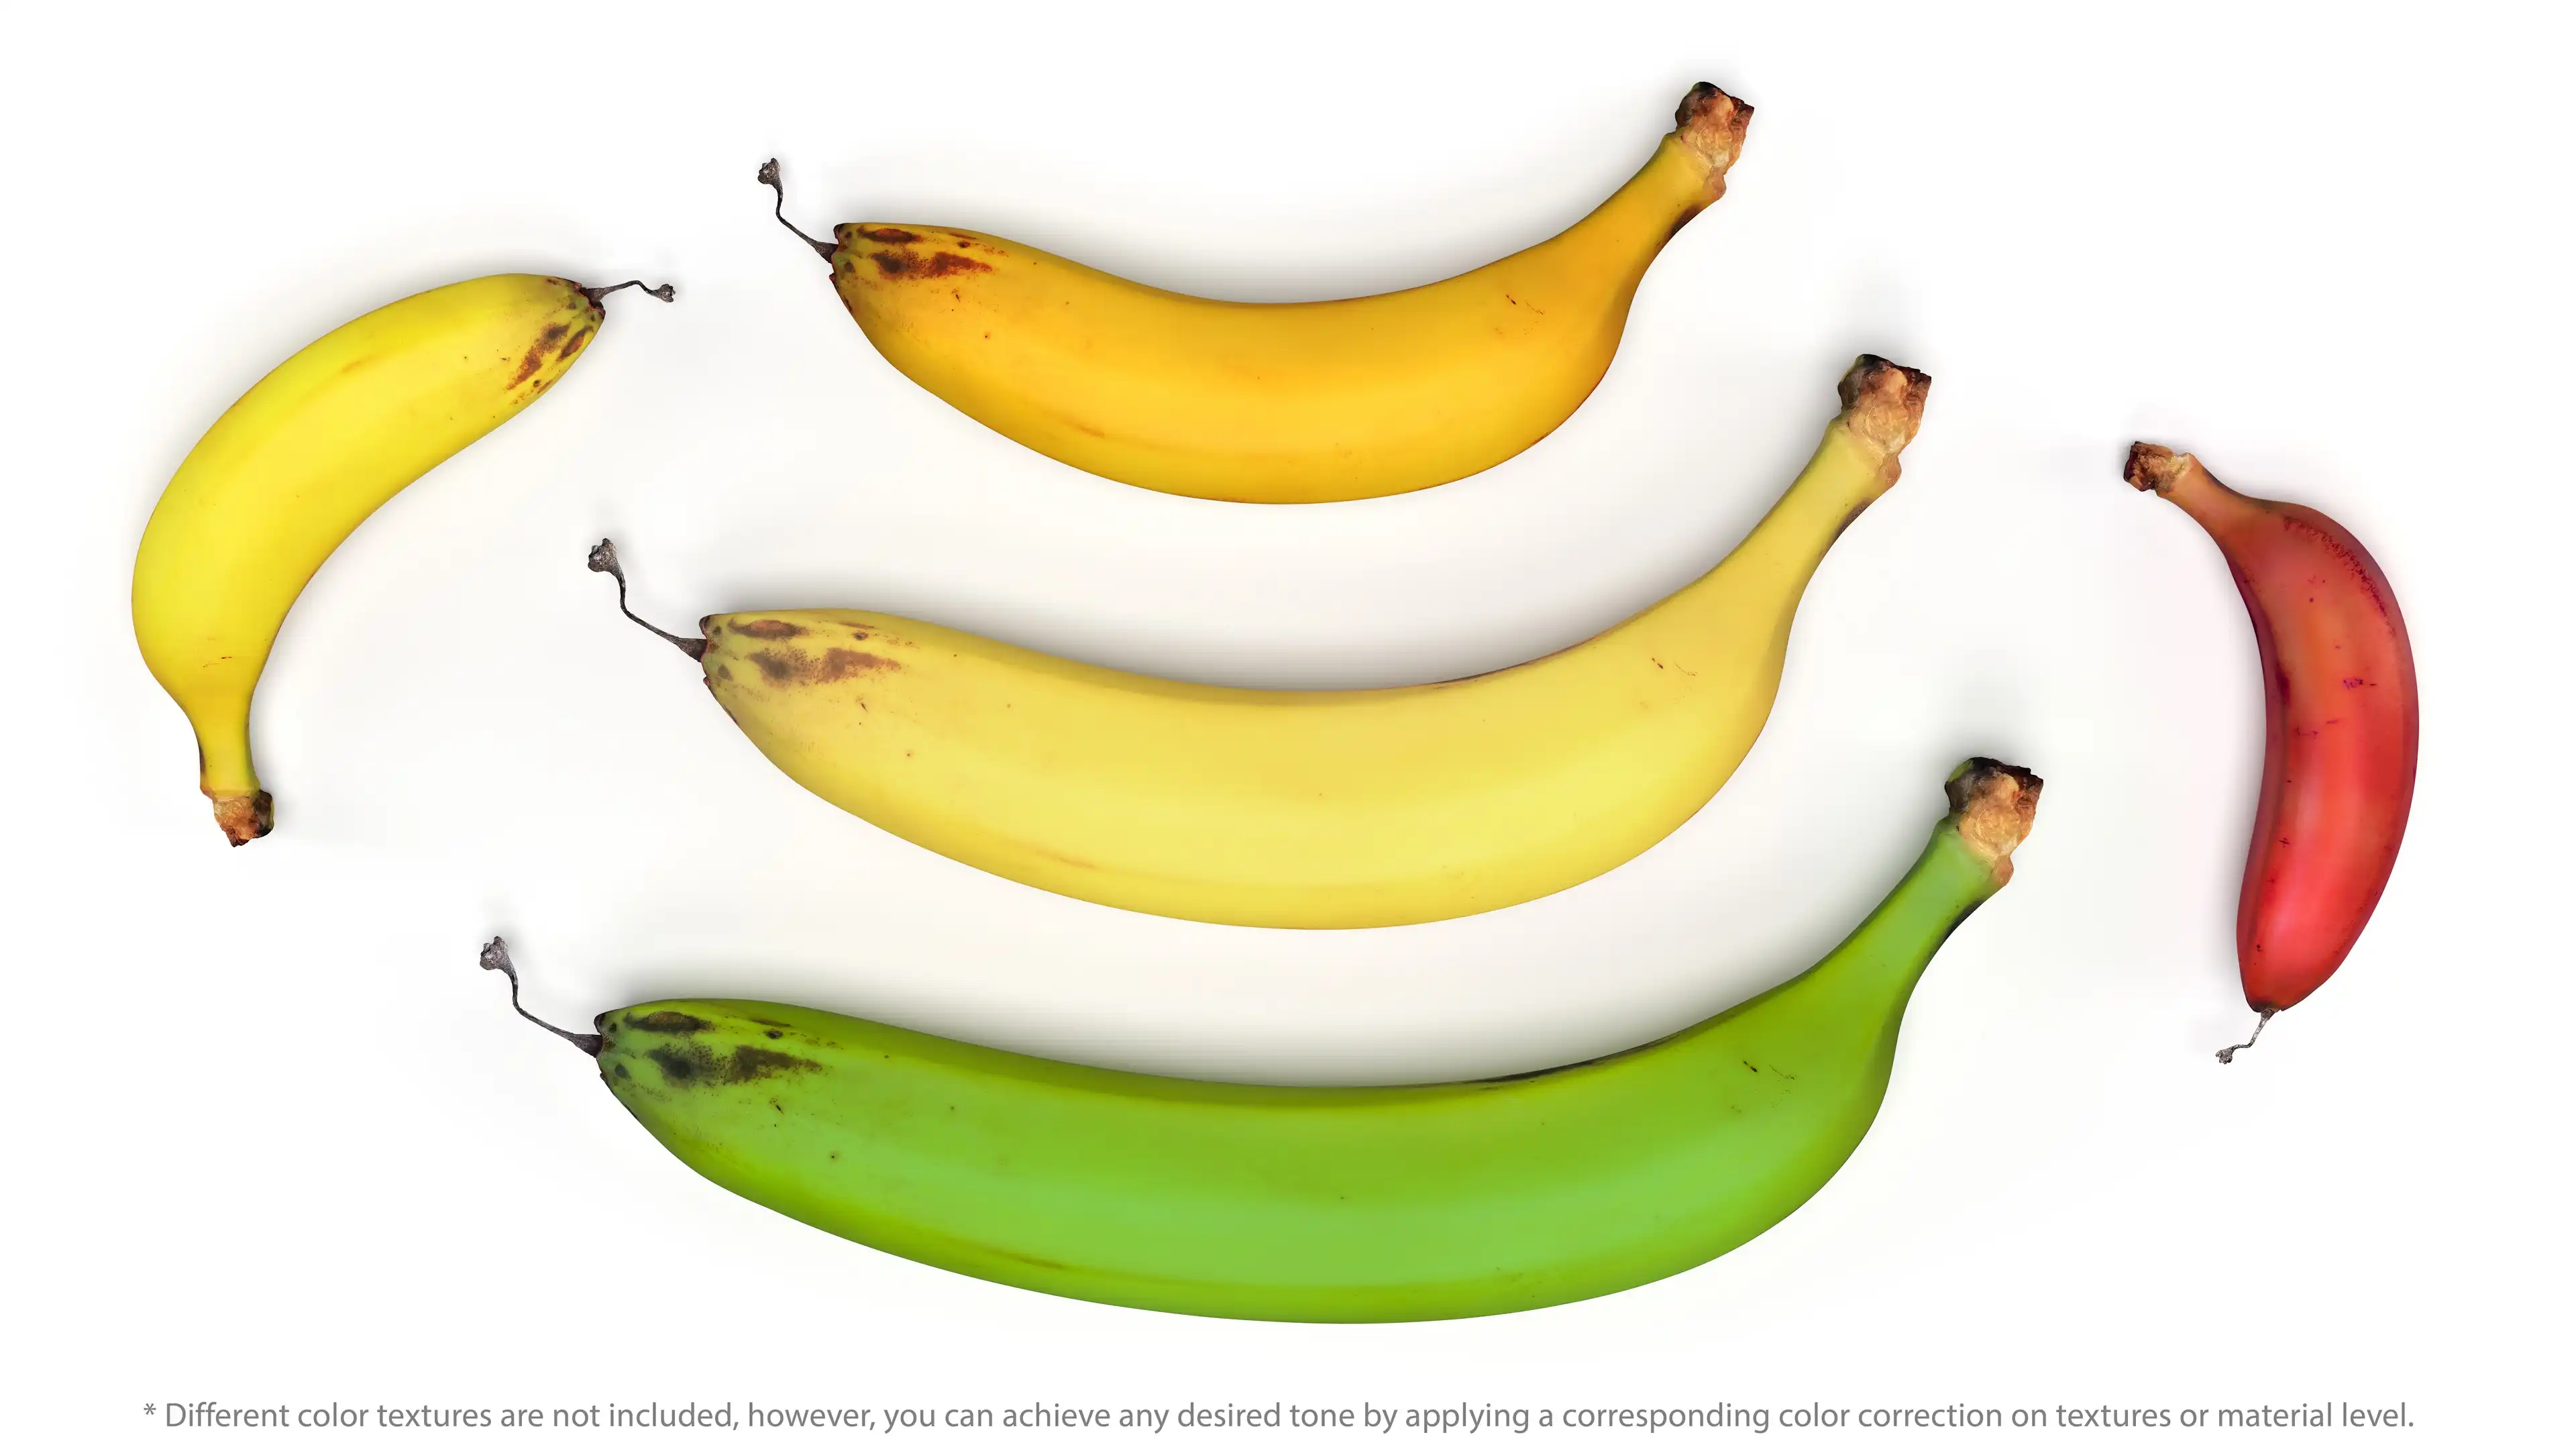 different colors banana 3d models: red banana, green banana, yellow banana, orange banana, and cream-yellow banana